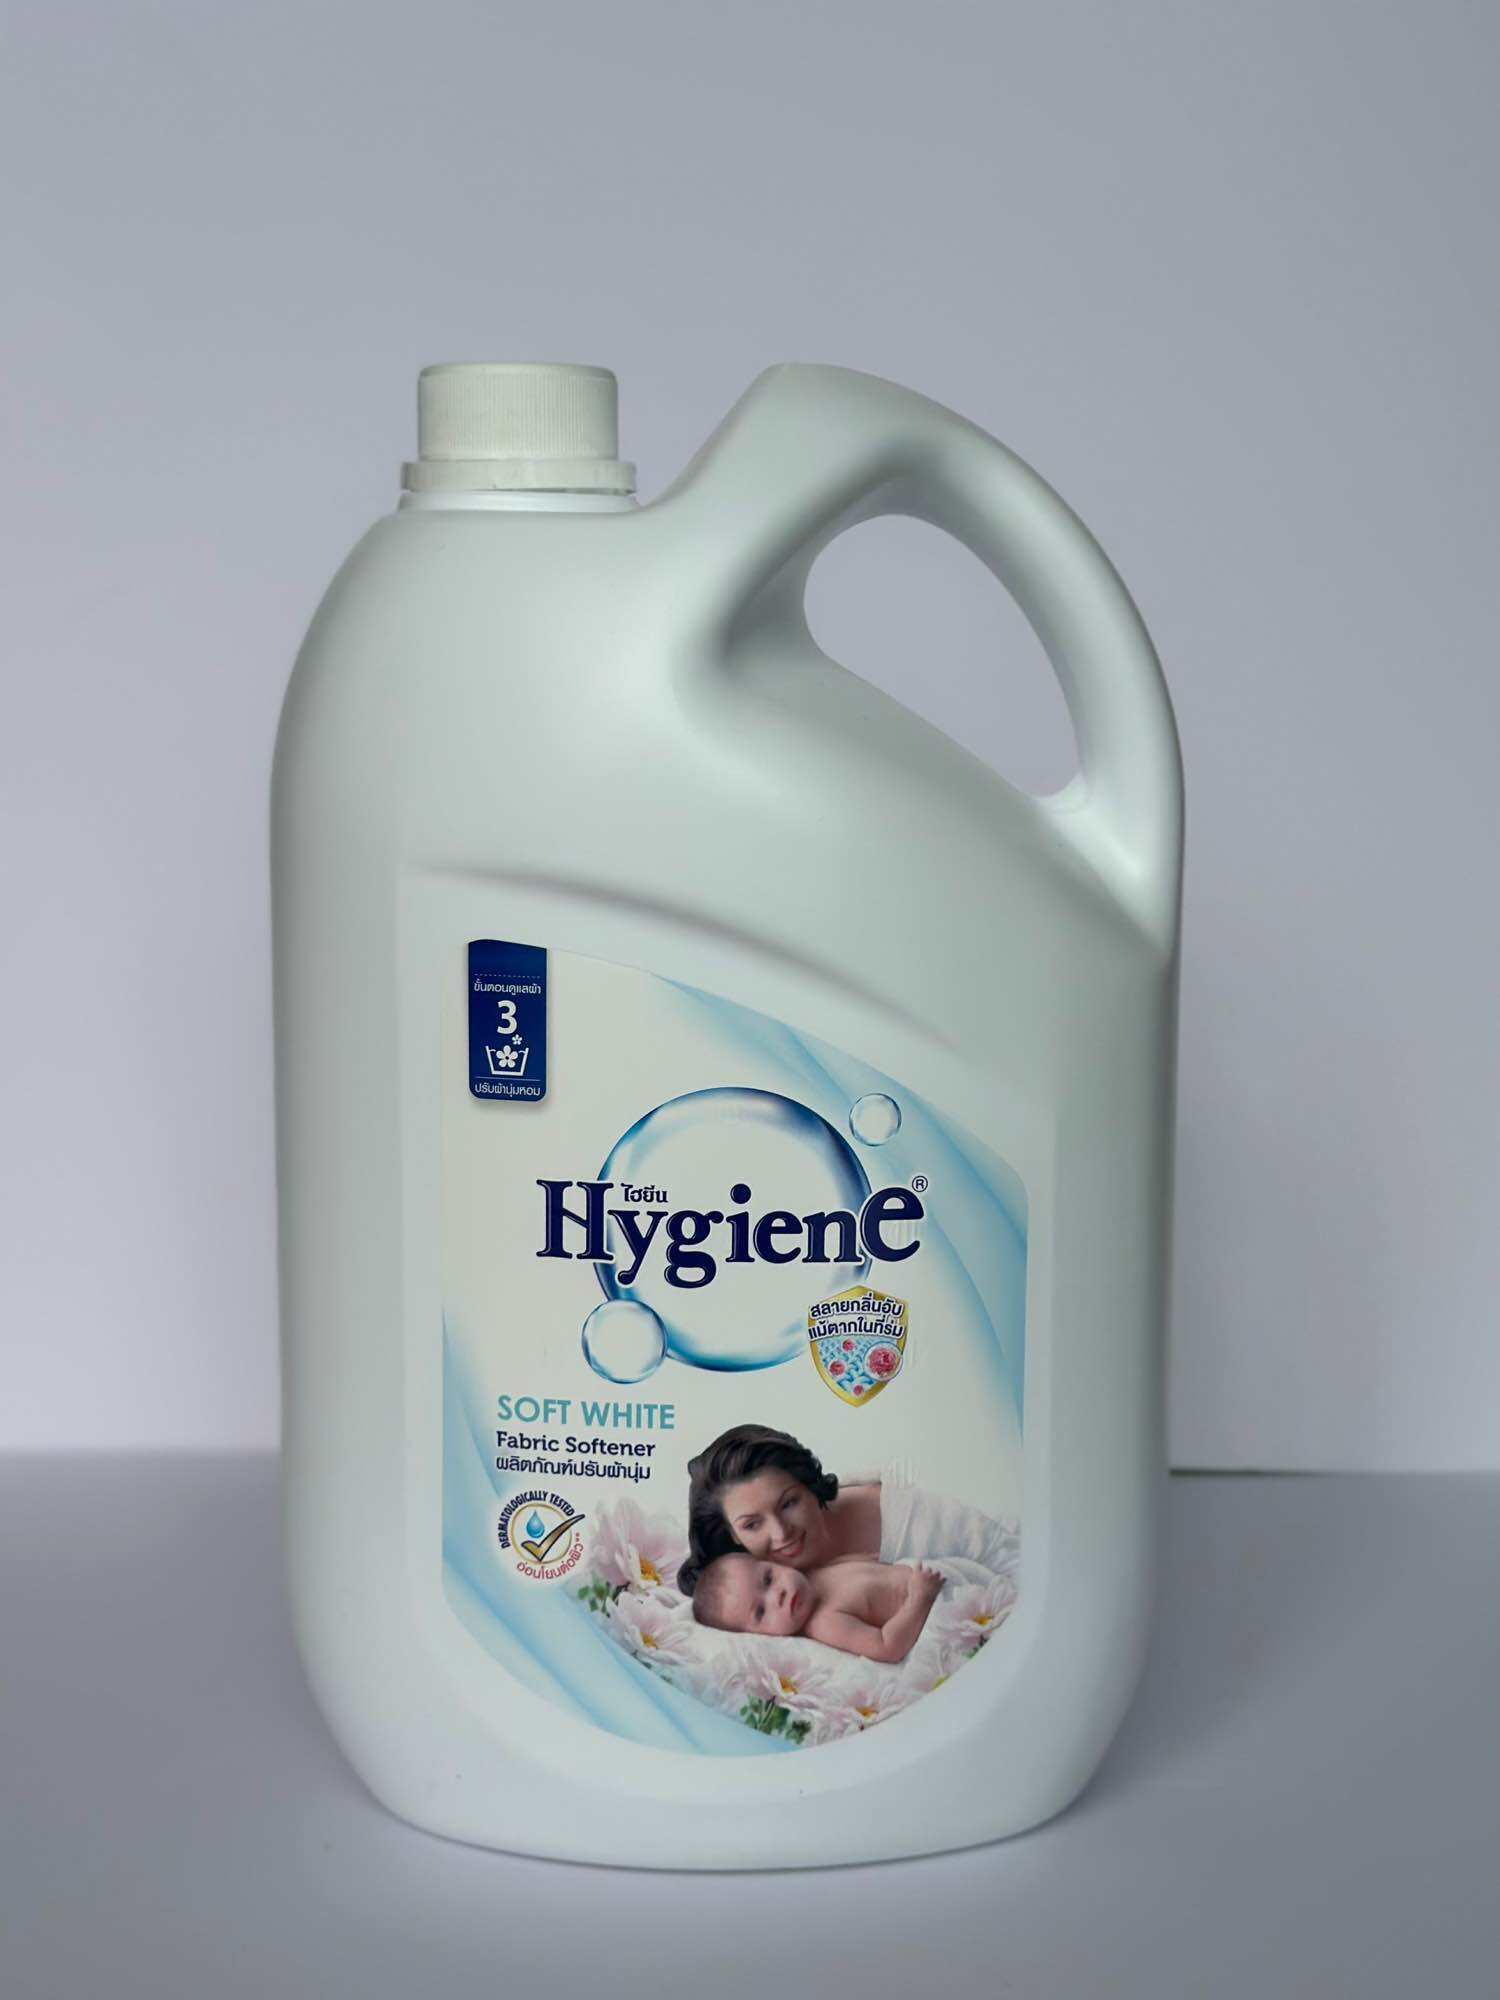 Nước xả vải dịu nhẹ HYGIENE 3.5 lít